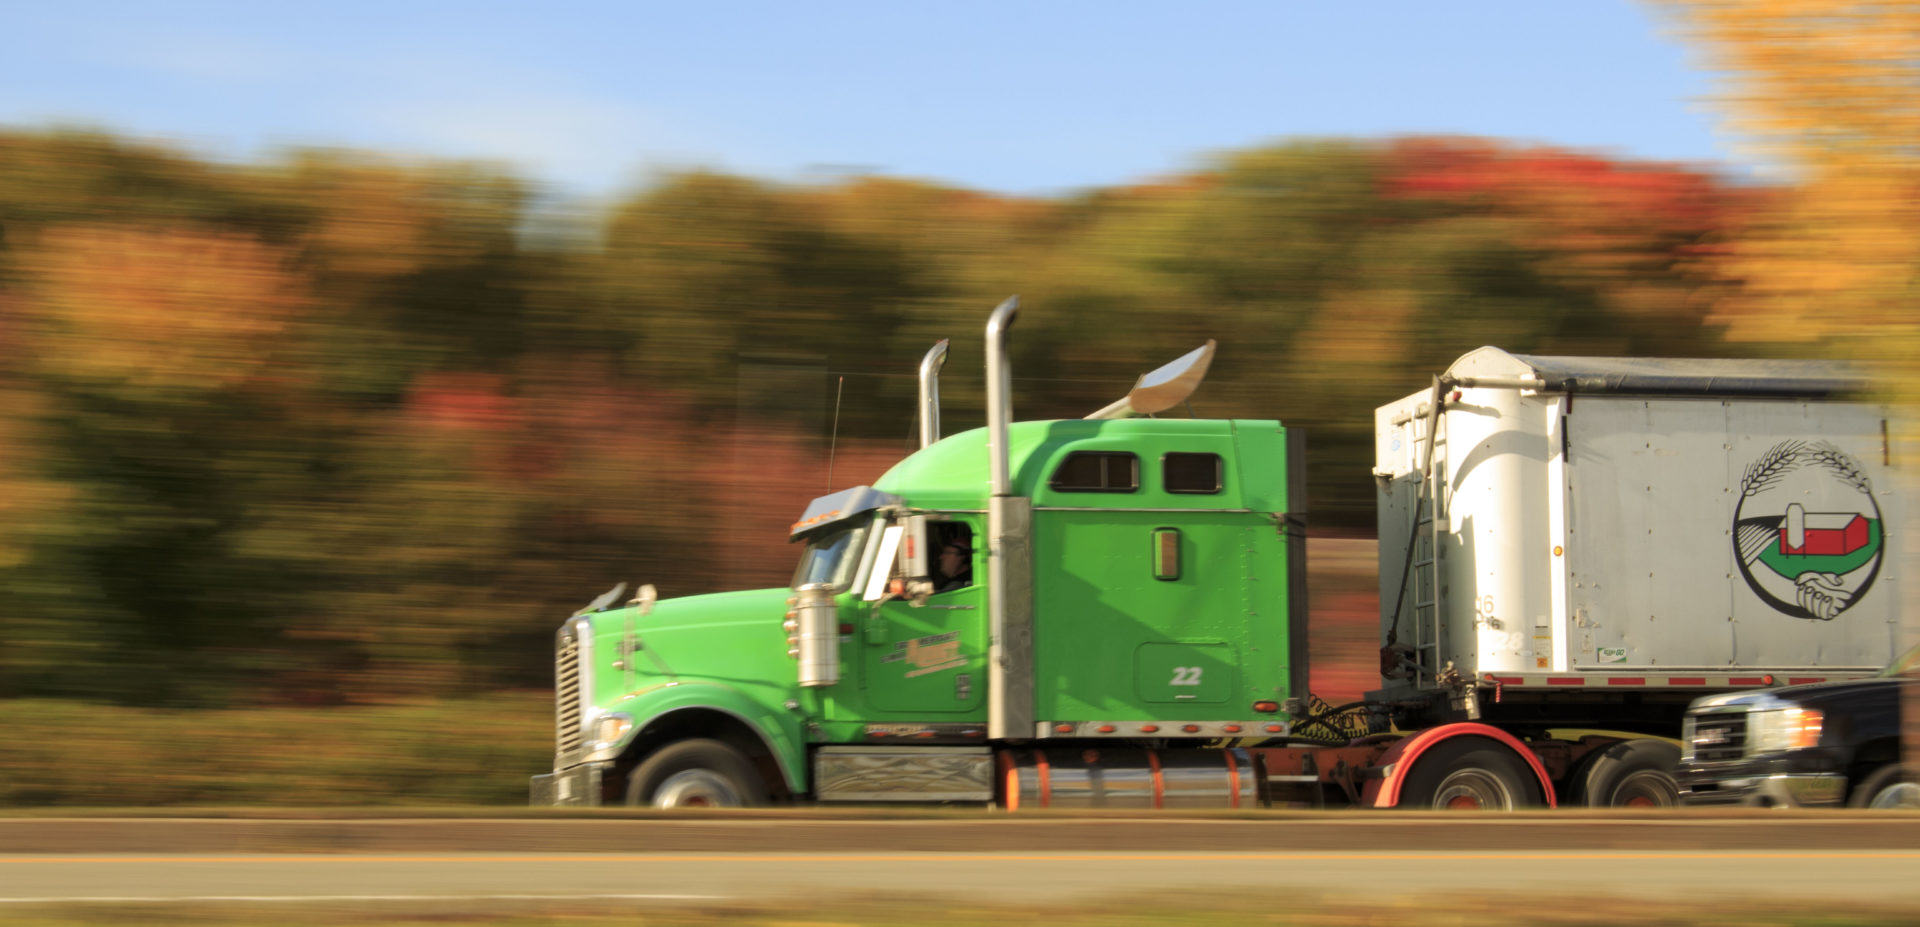 Q-service truck – Serwis samochodów cieżarowych TIR